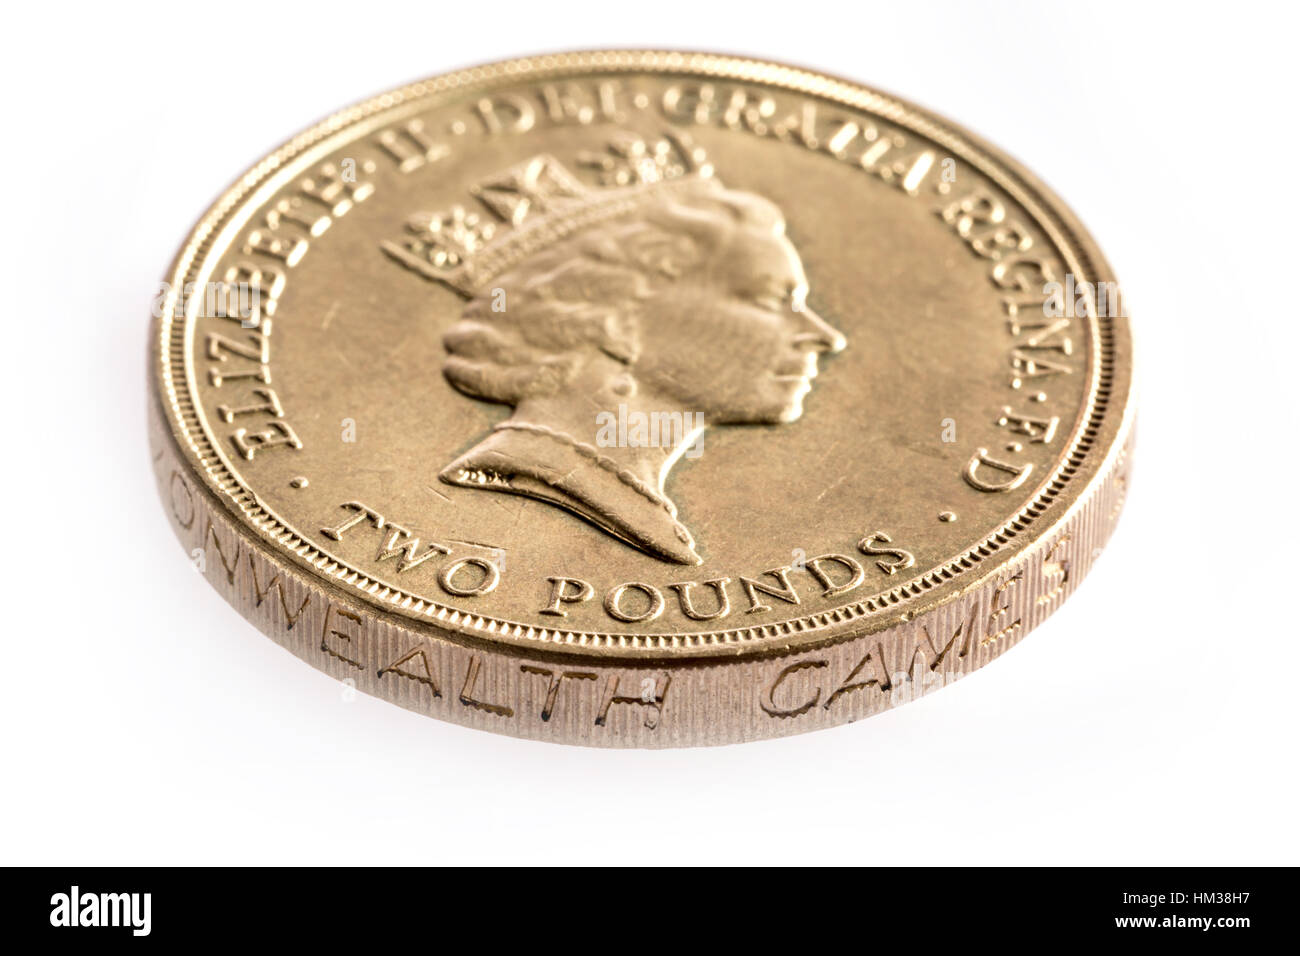 1986 dos pound moneda introducida para marcar los Juegos Commonwealth Foto de stock